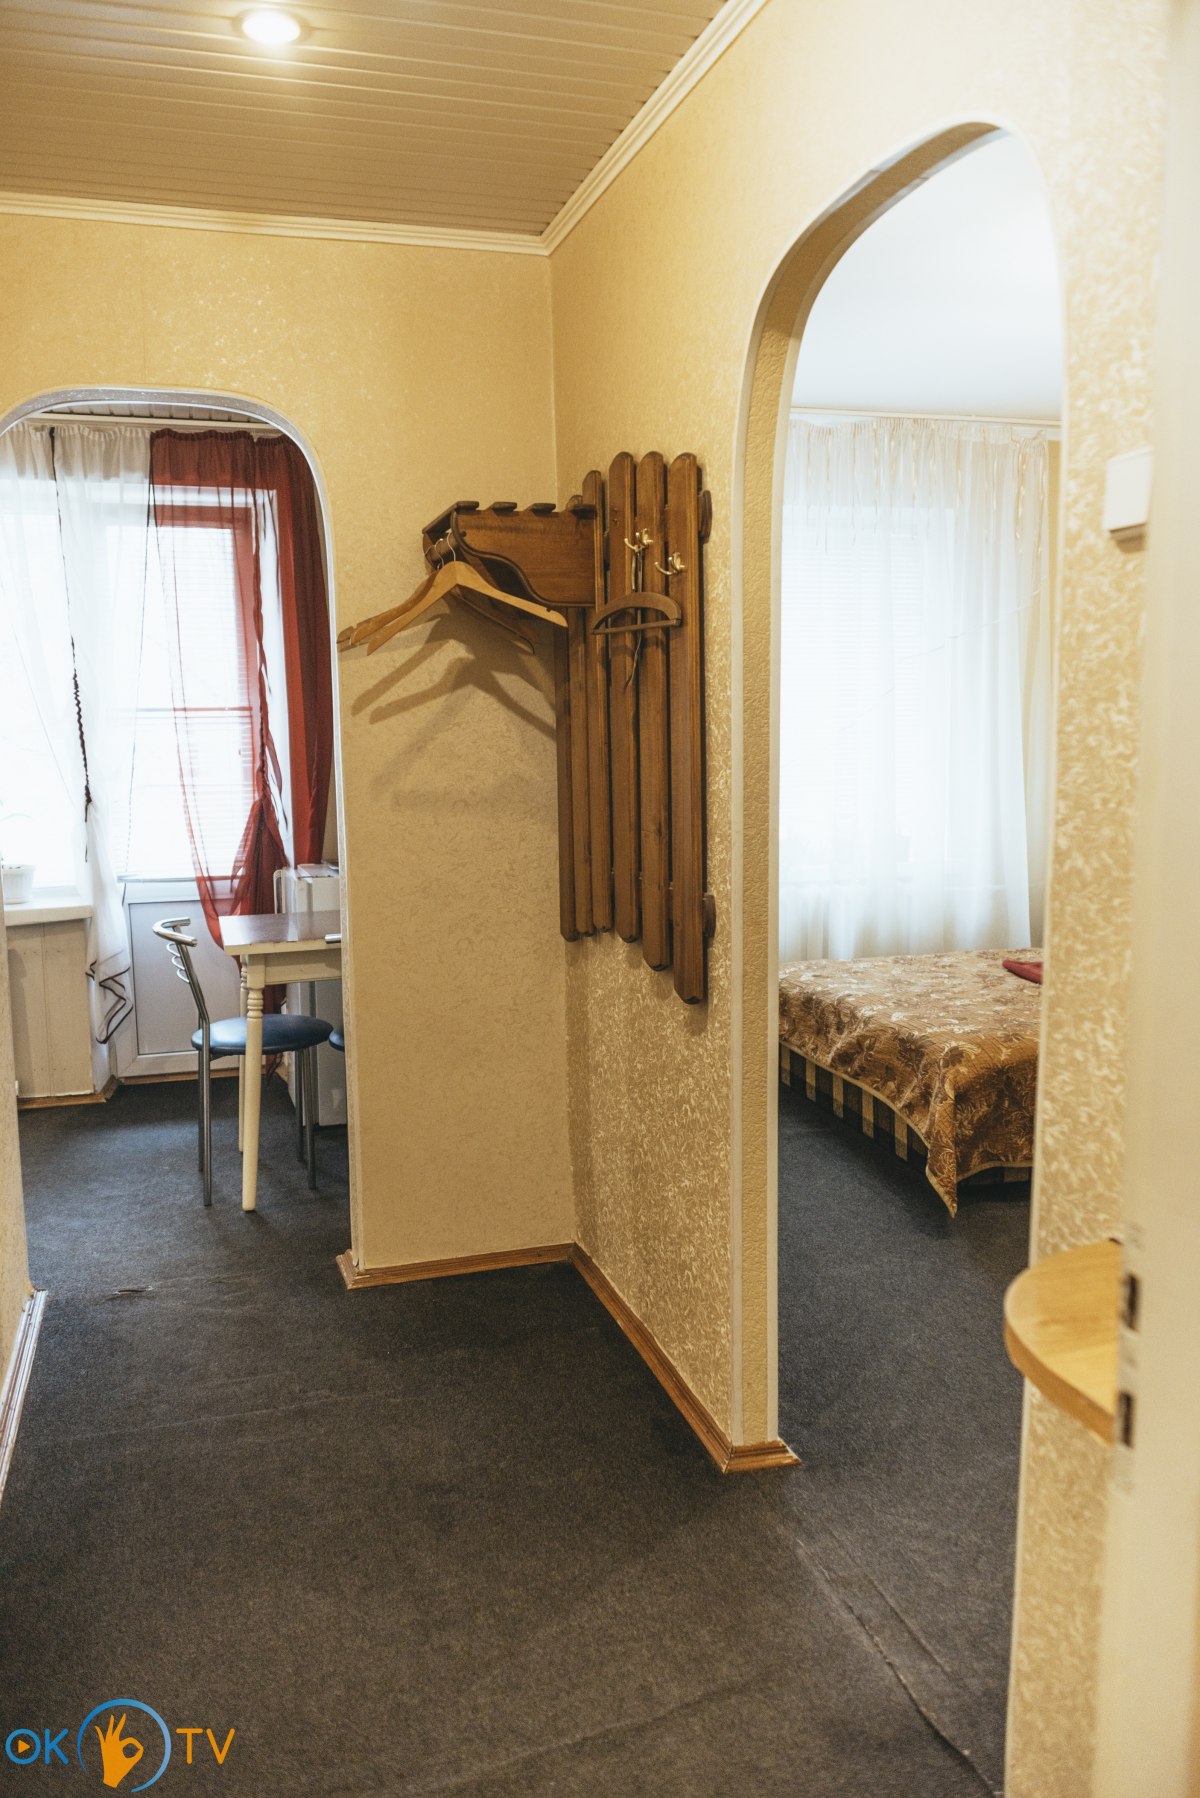 Однокомнатная квартира в мини-отеле в Подольском районе Киева фото 3